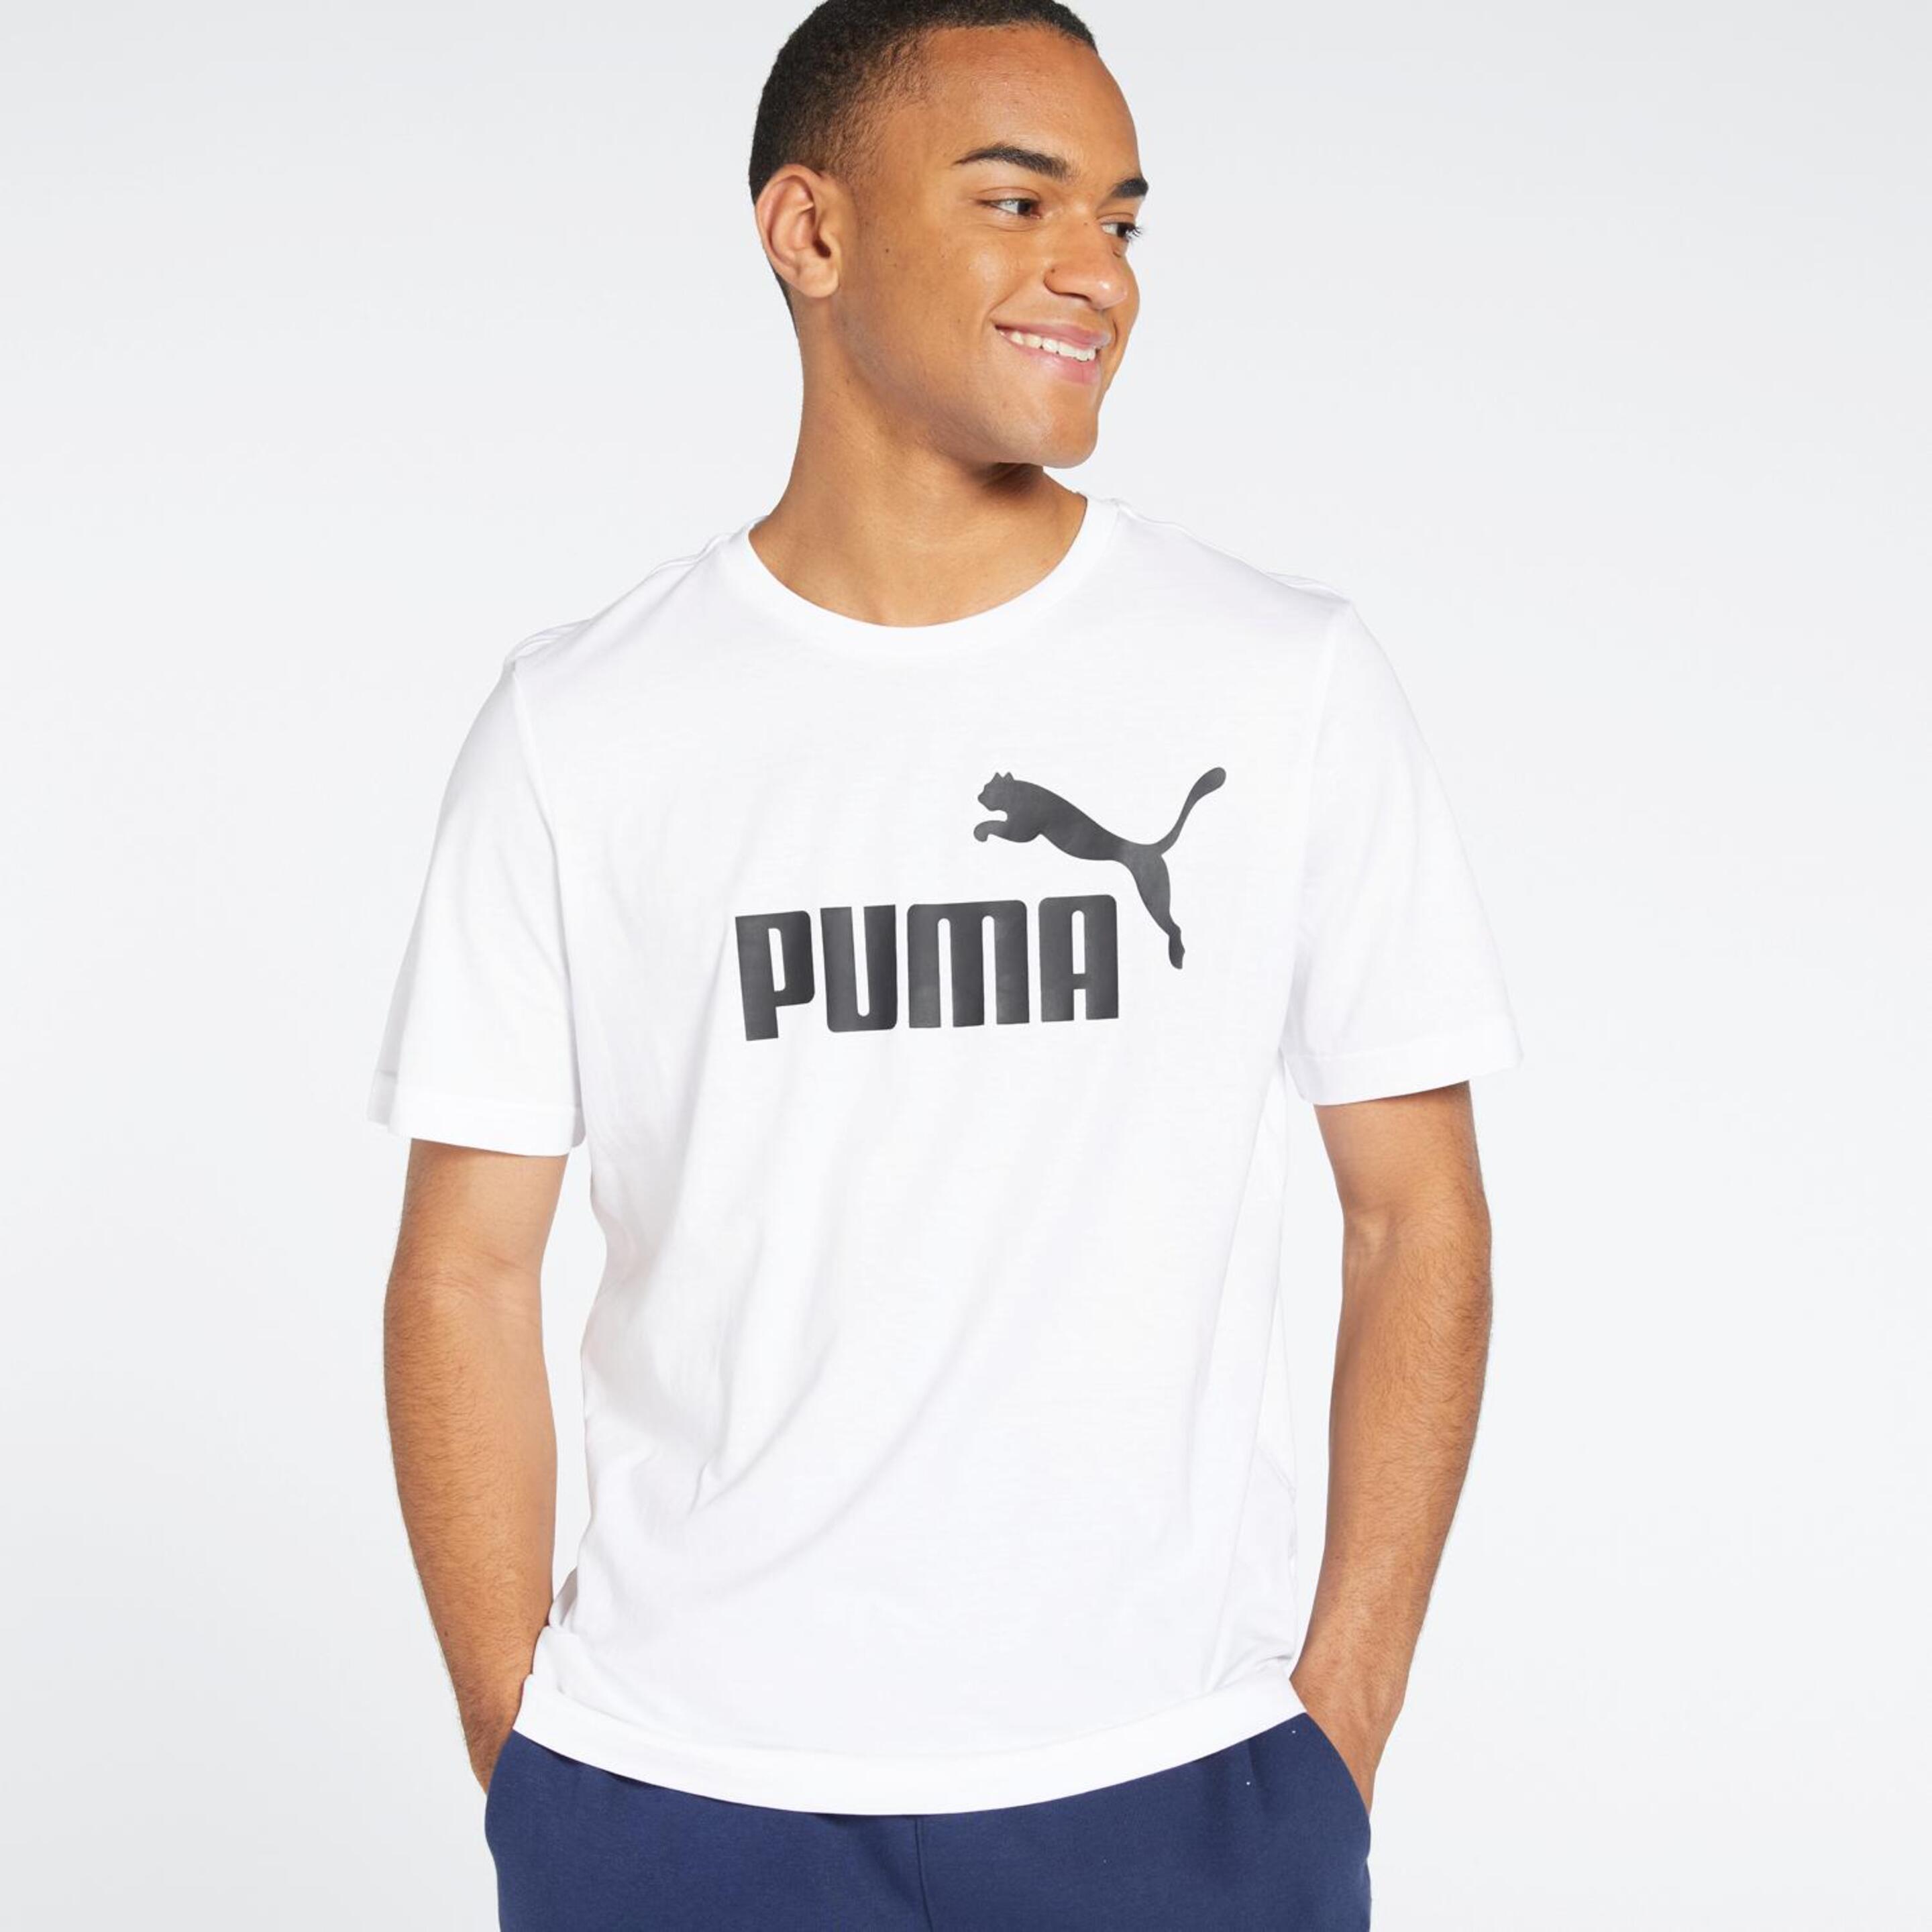 Puma Ess - Blanco - Camiseta Hombre